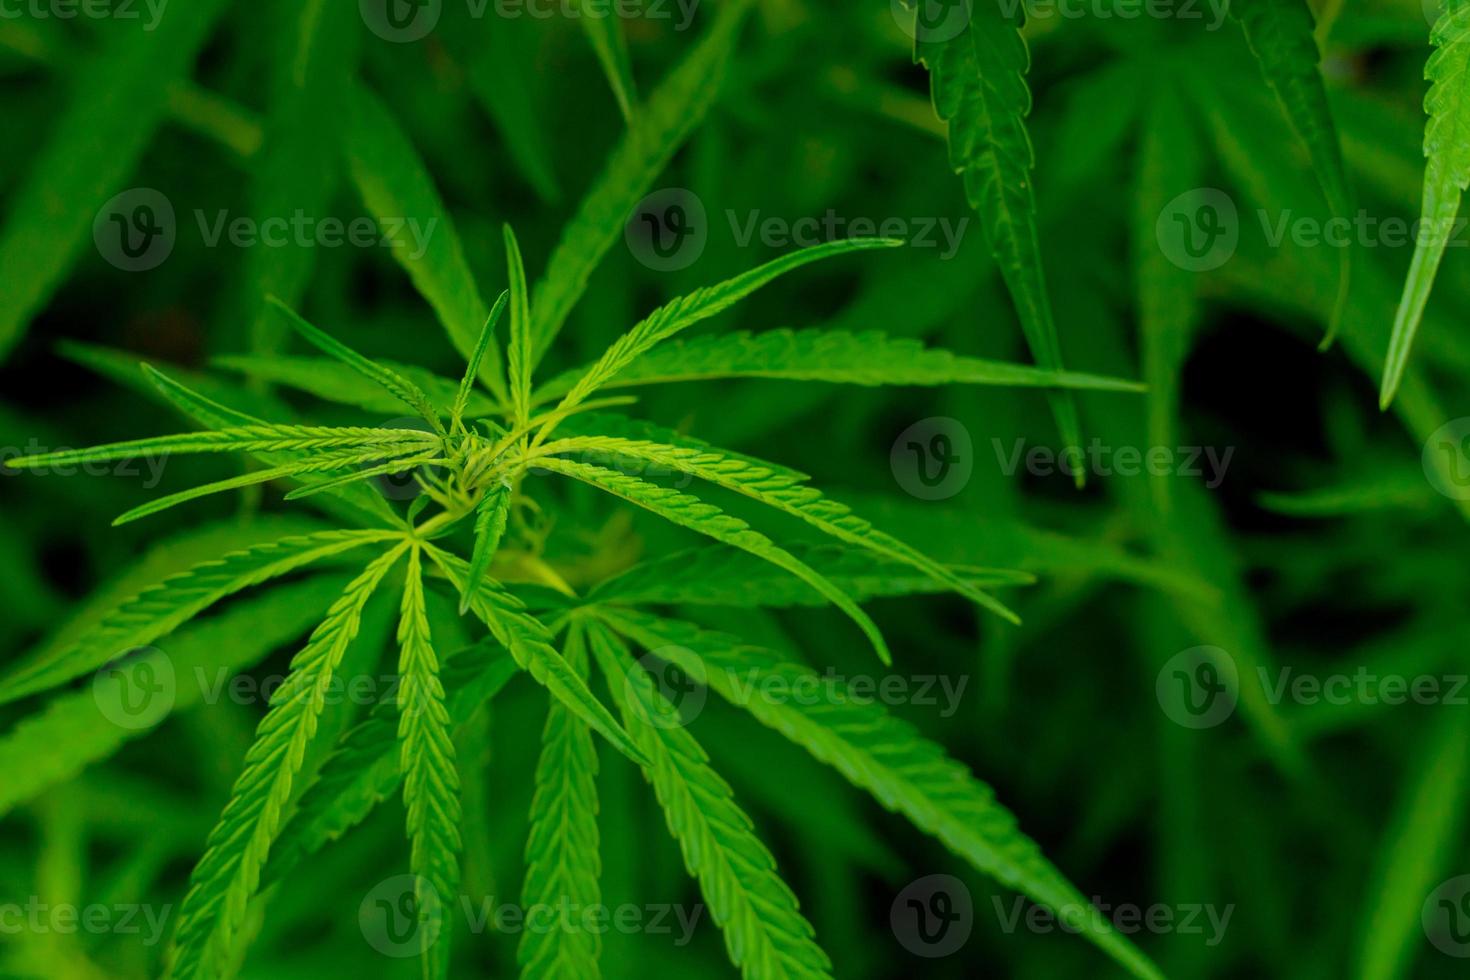 groene cannabisbladeren voor medicinale of culinaire doeleinden foto